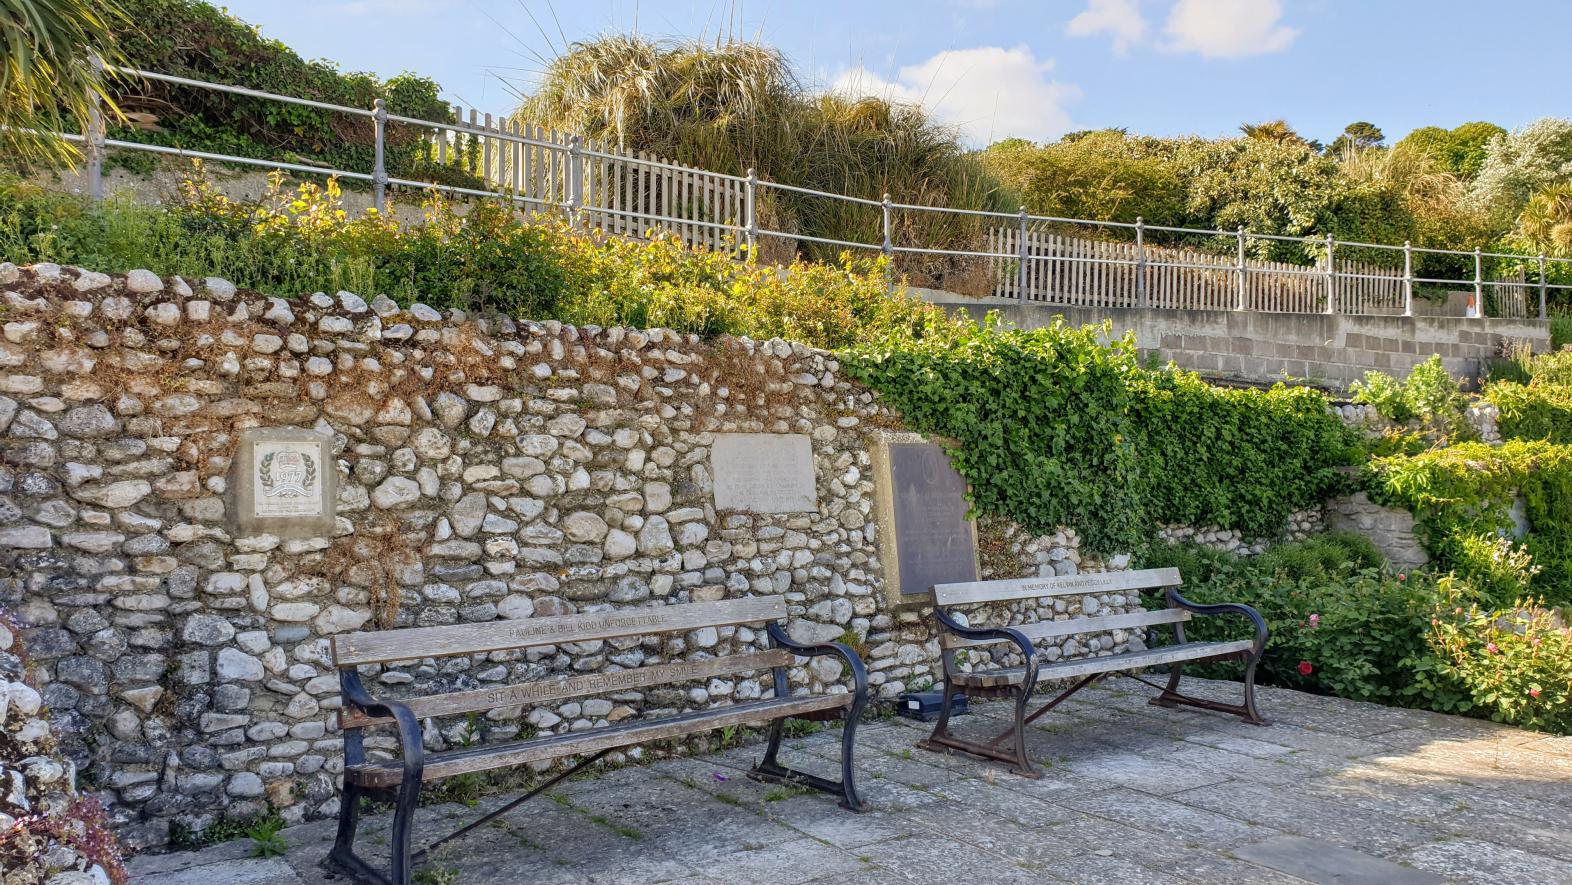 Benches in Jane Austen garden Lyme Regis